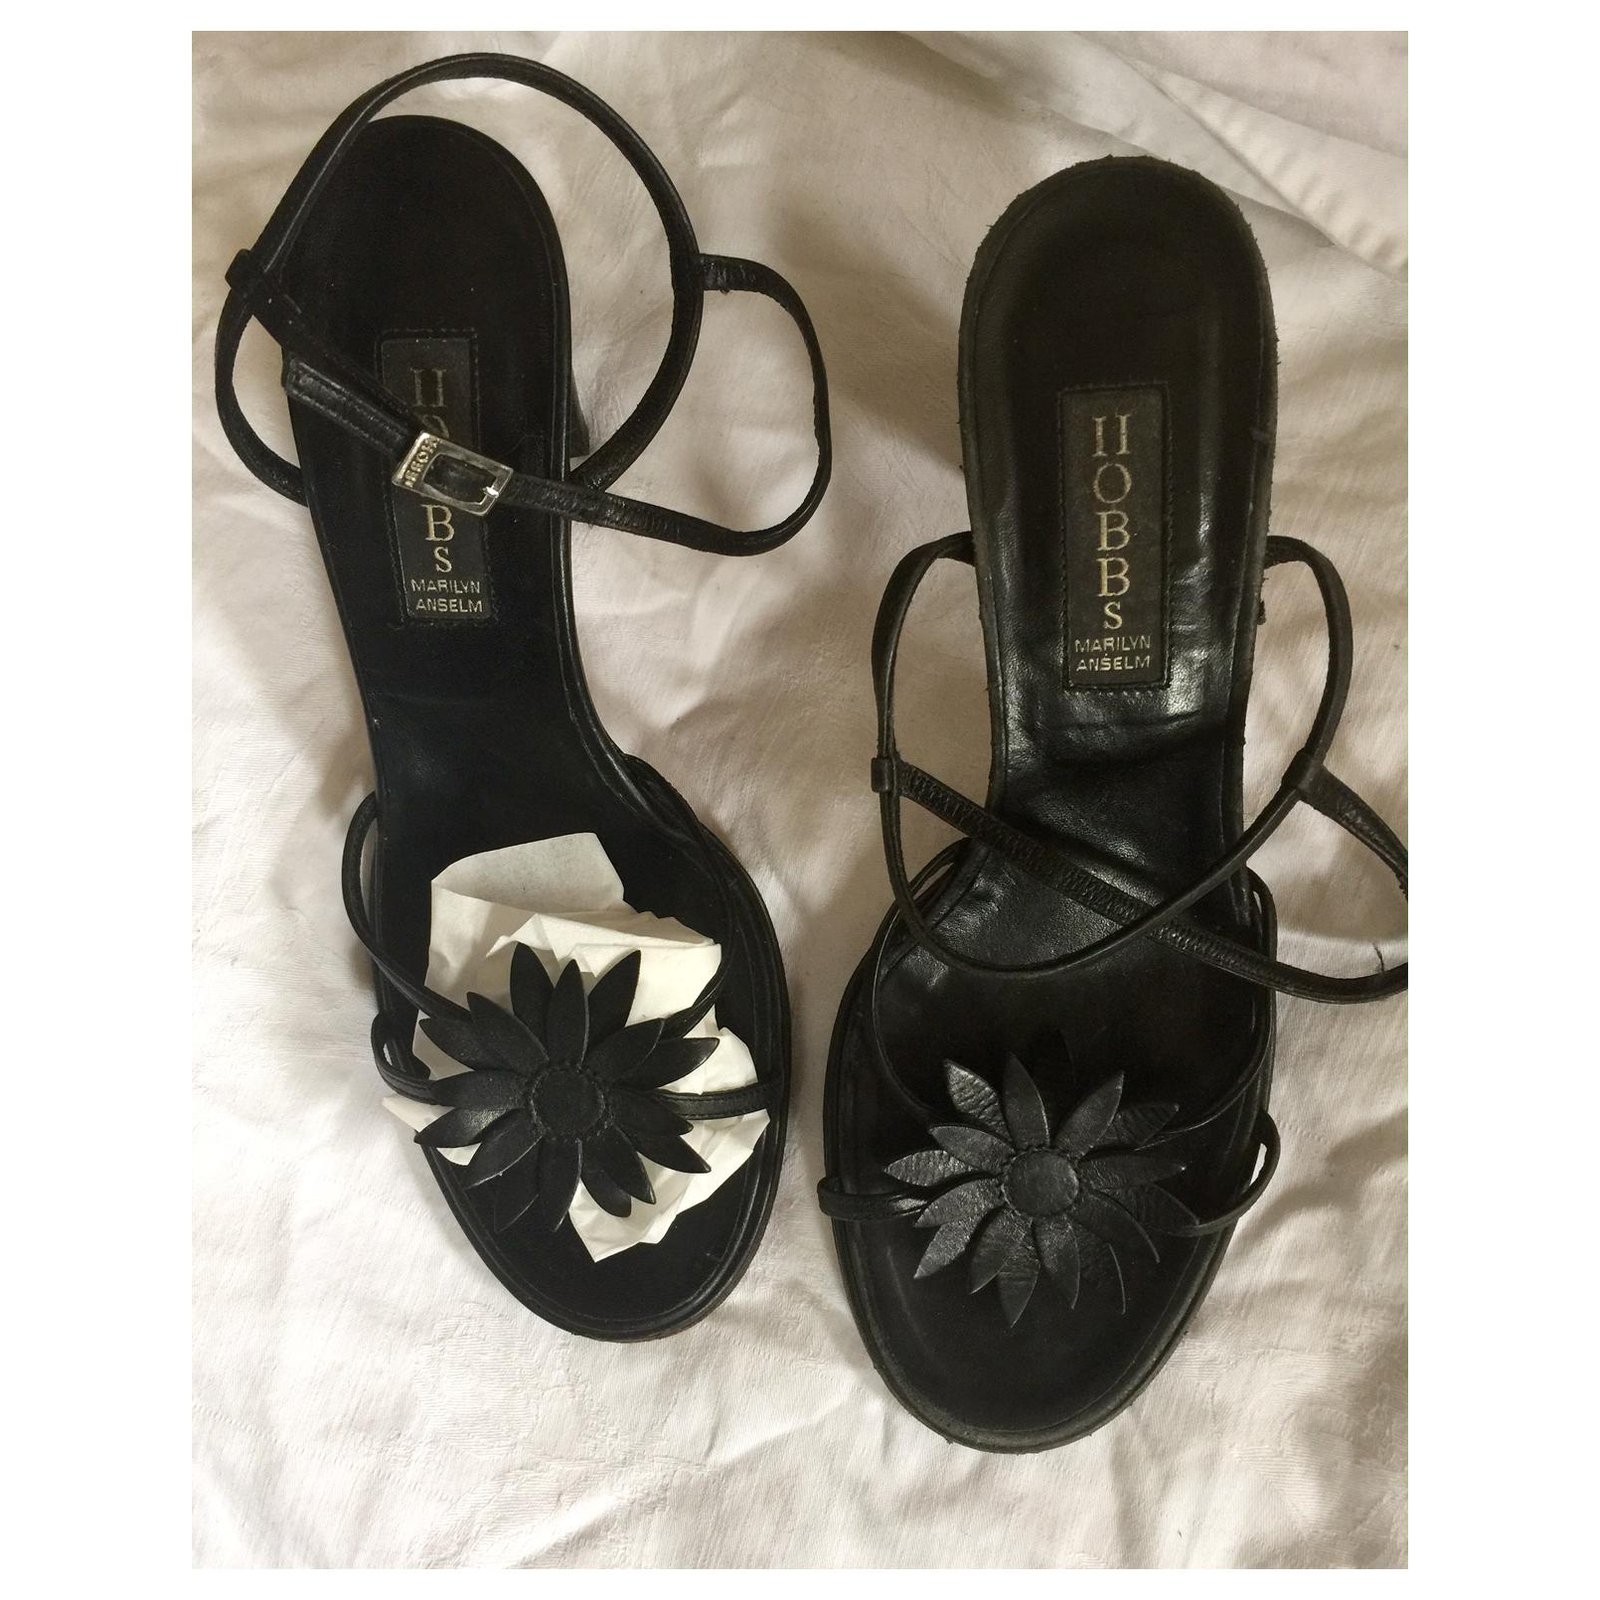 Vintage sandals Black Leather - Joli Closet